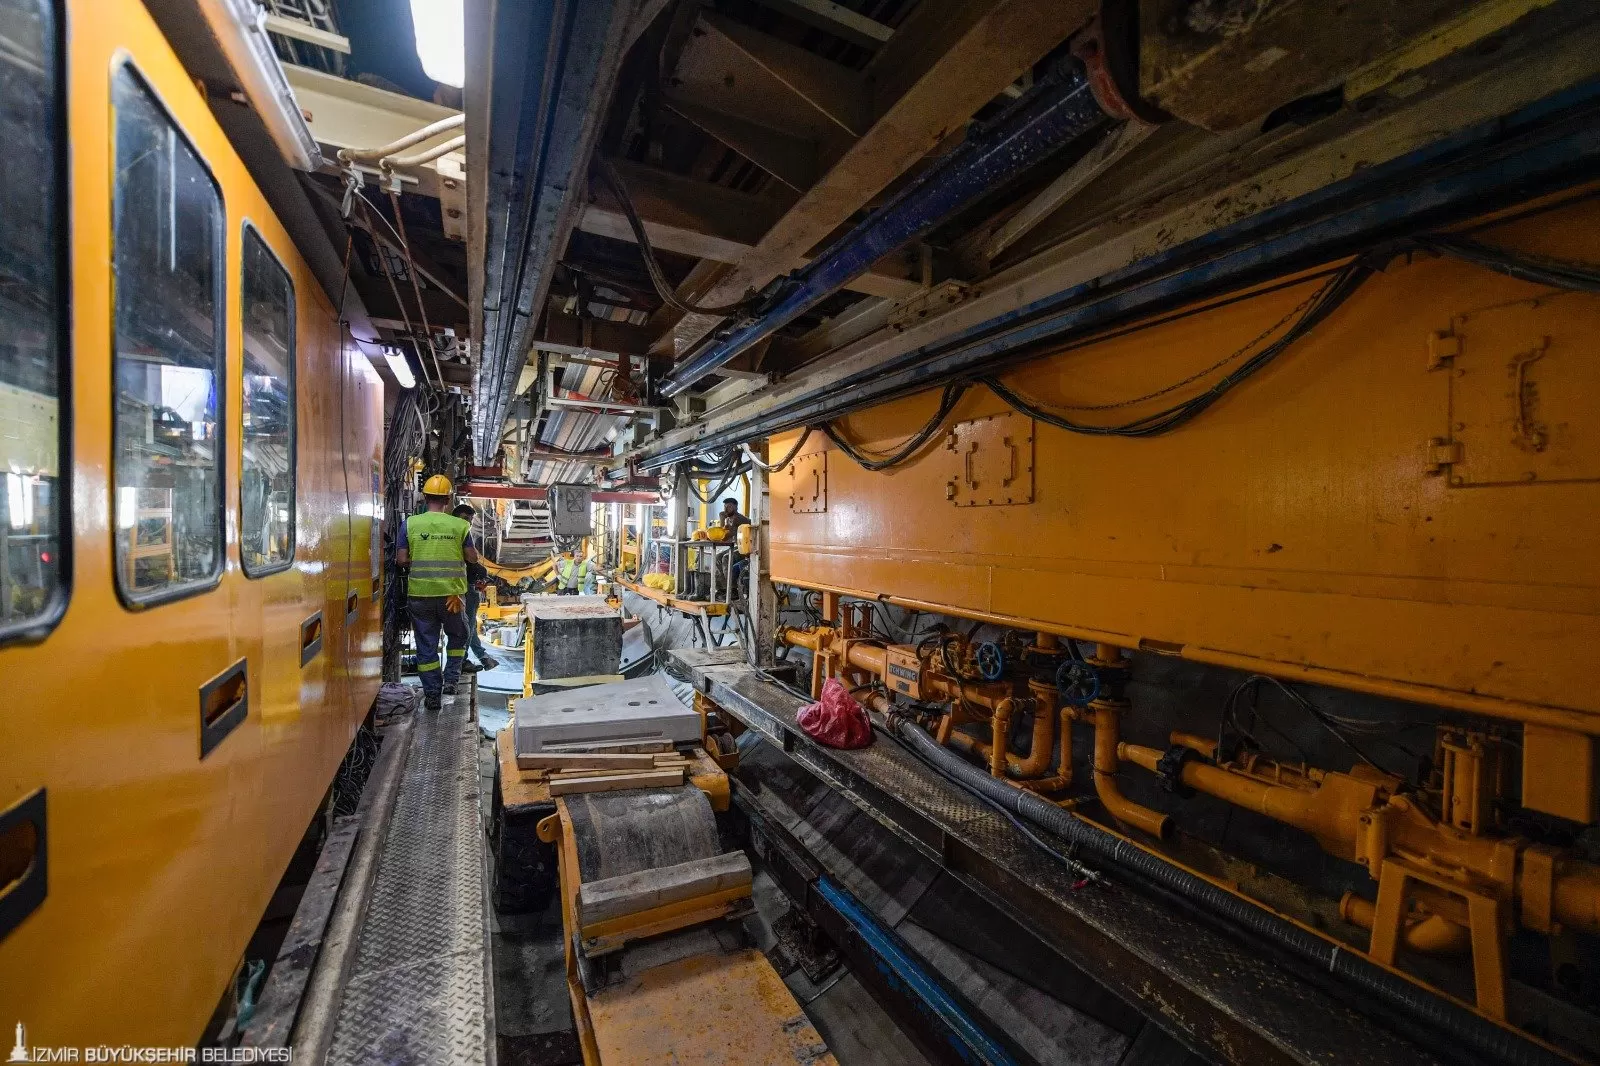 İzmir Büyükşehir Belediye Başkanı Dr. Cemil Tugay, 4 tünel açma makinesi ile yerin 36 metre altında devam eden Buca Metrosu çalışmalarını yerinde inceledi.